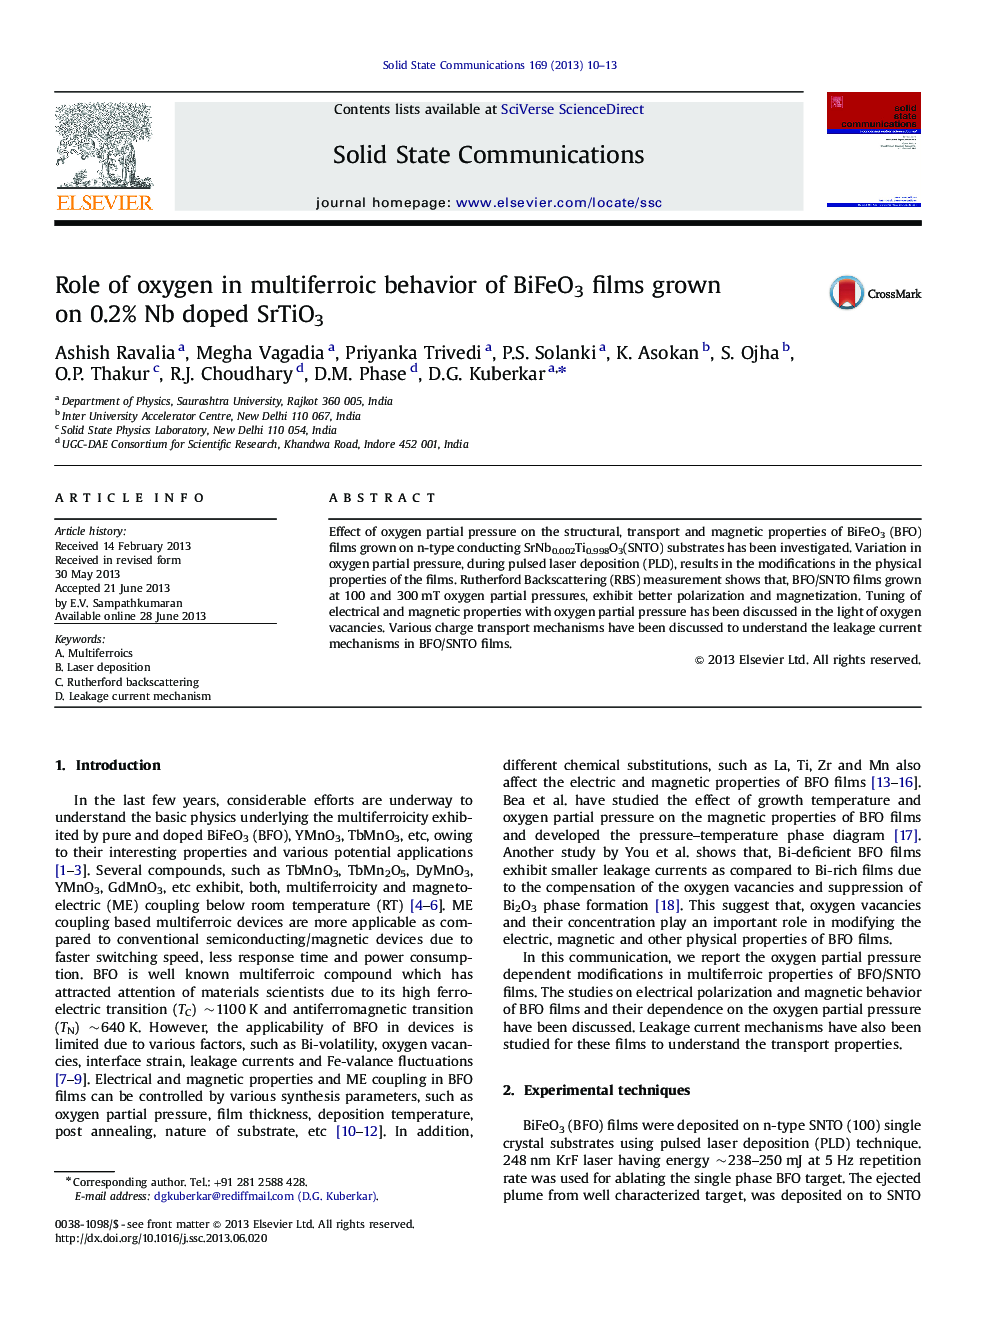 Role of oxygen in multiferroic behavior of BiFeO3 films grown on 0.2% Nb doped SrTiO3